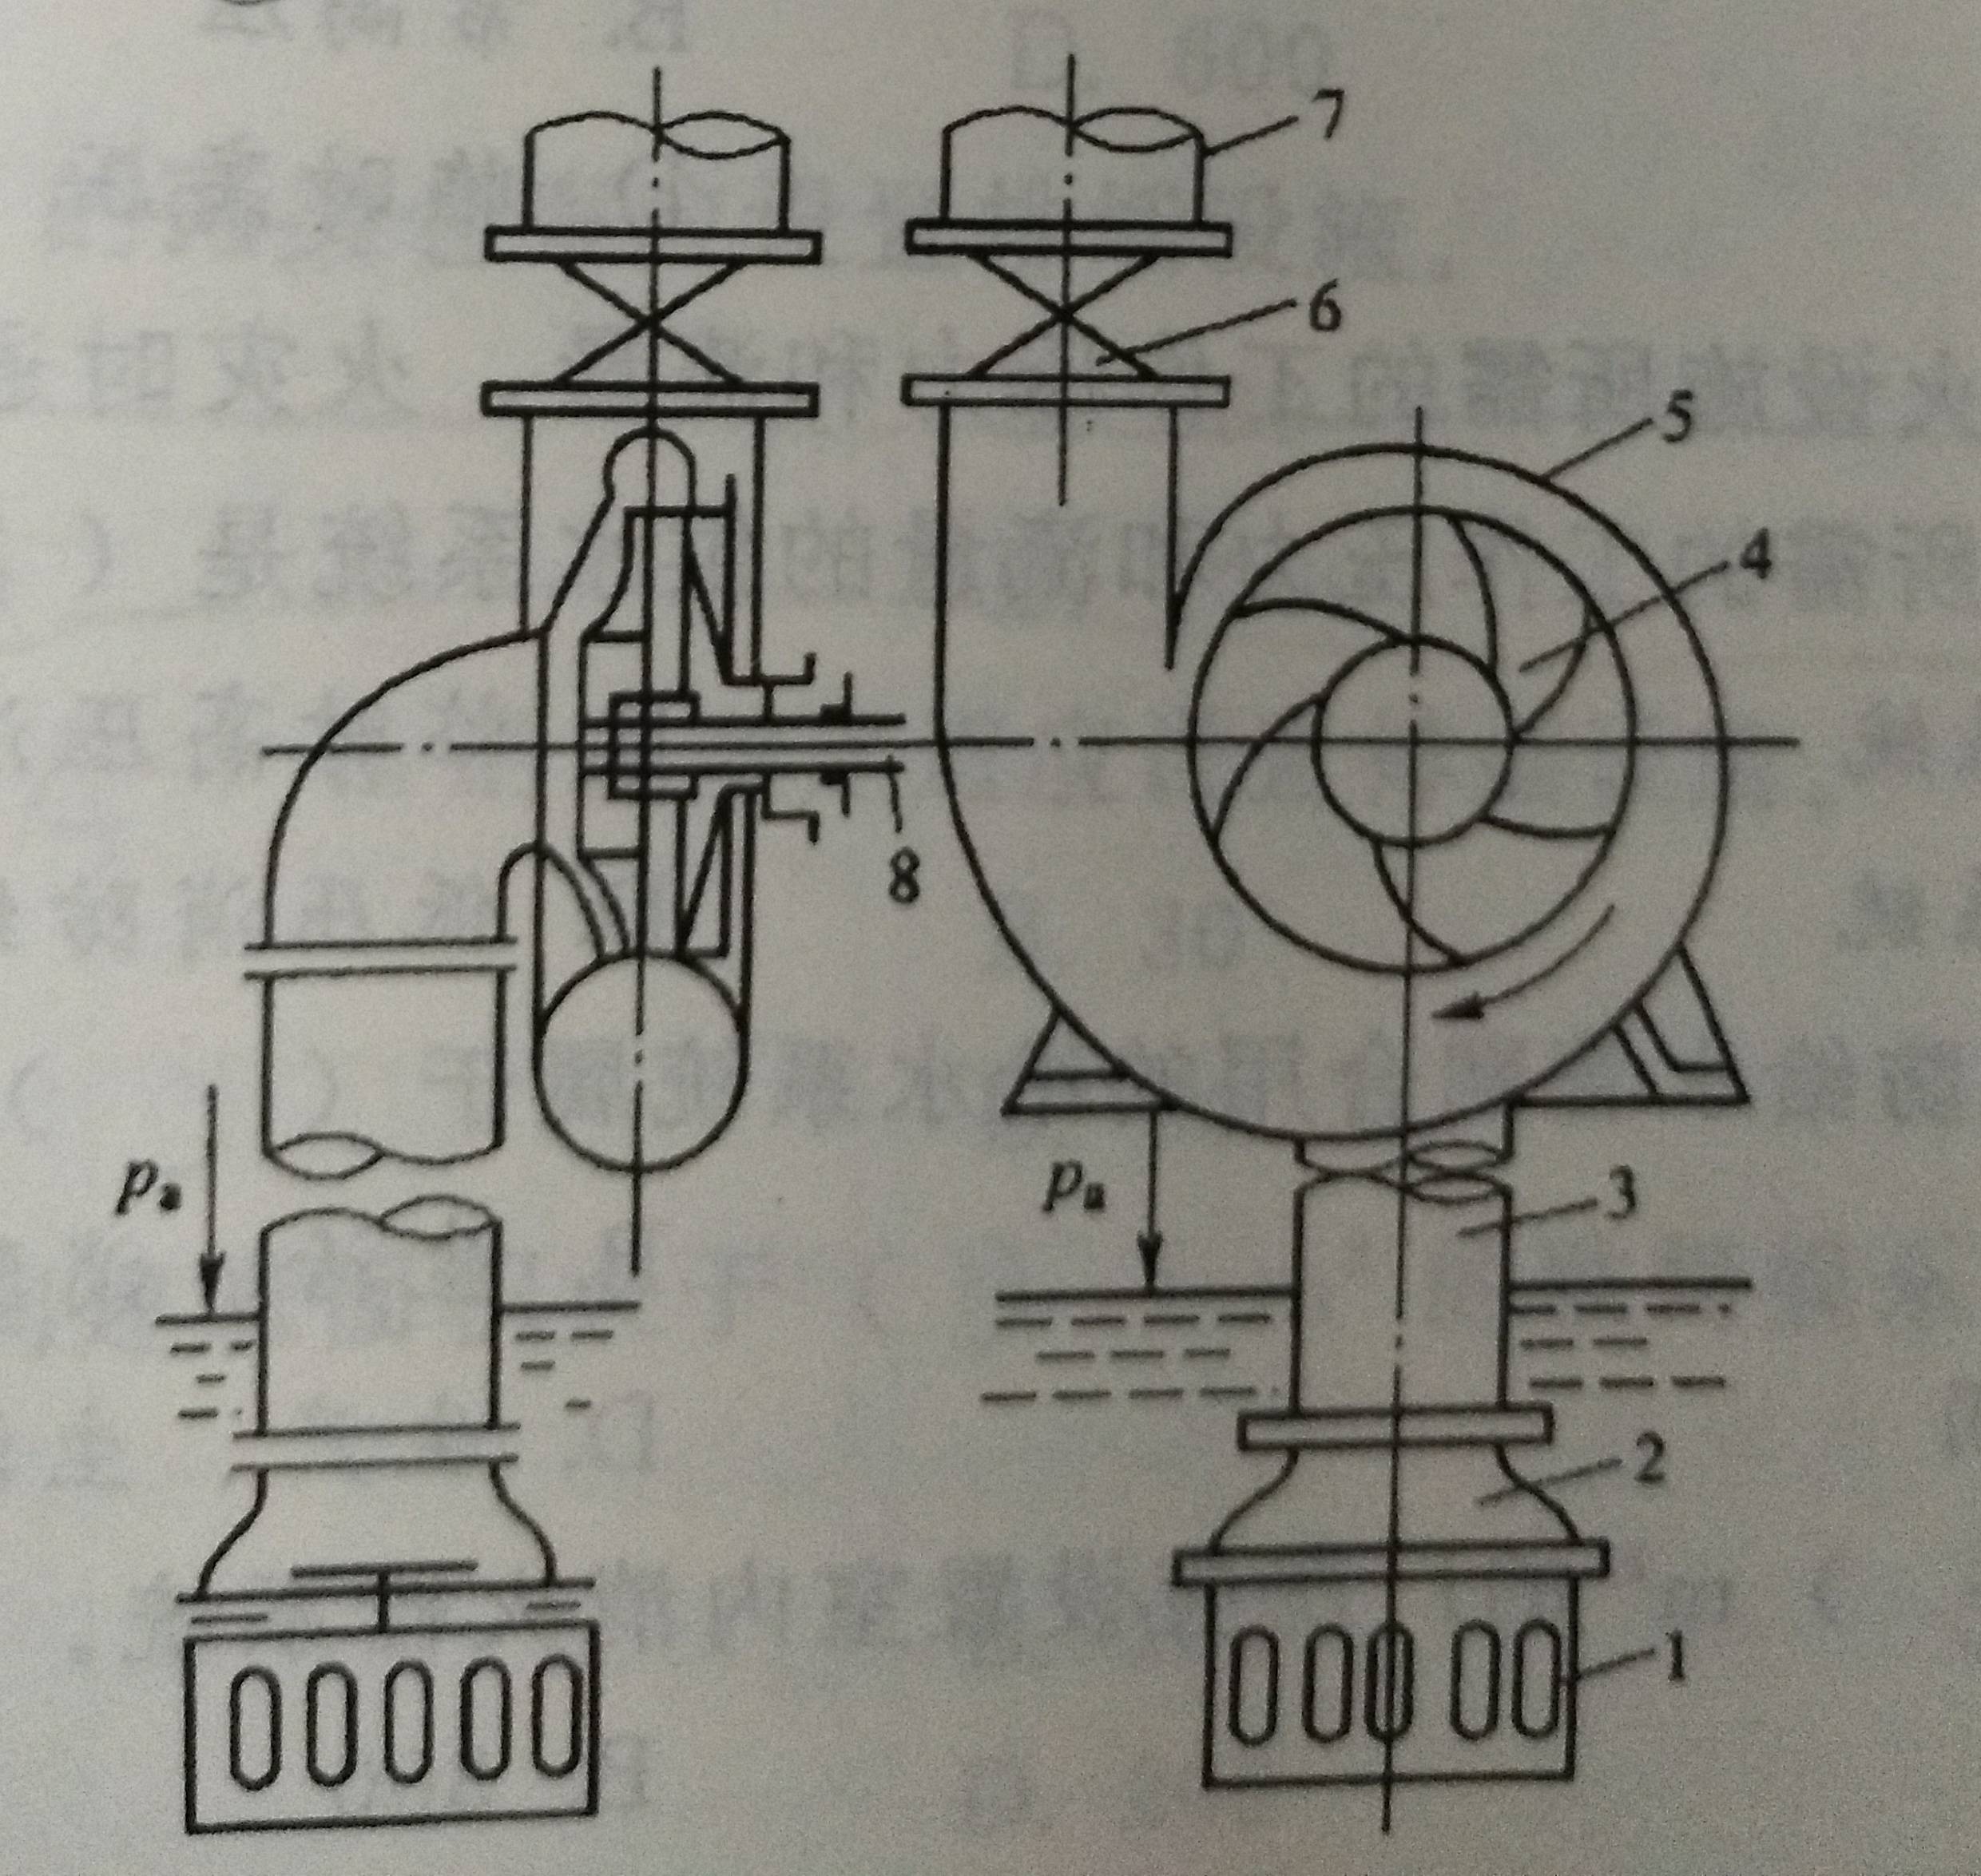 下面离心泵组成示意图中( )是叶轮